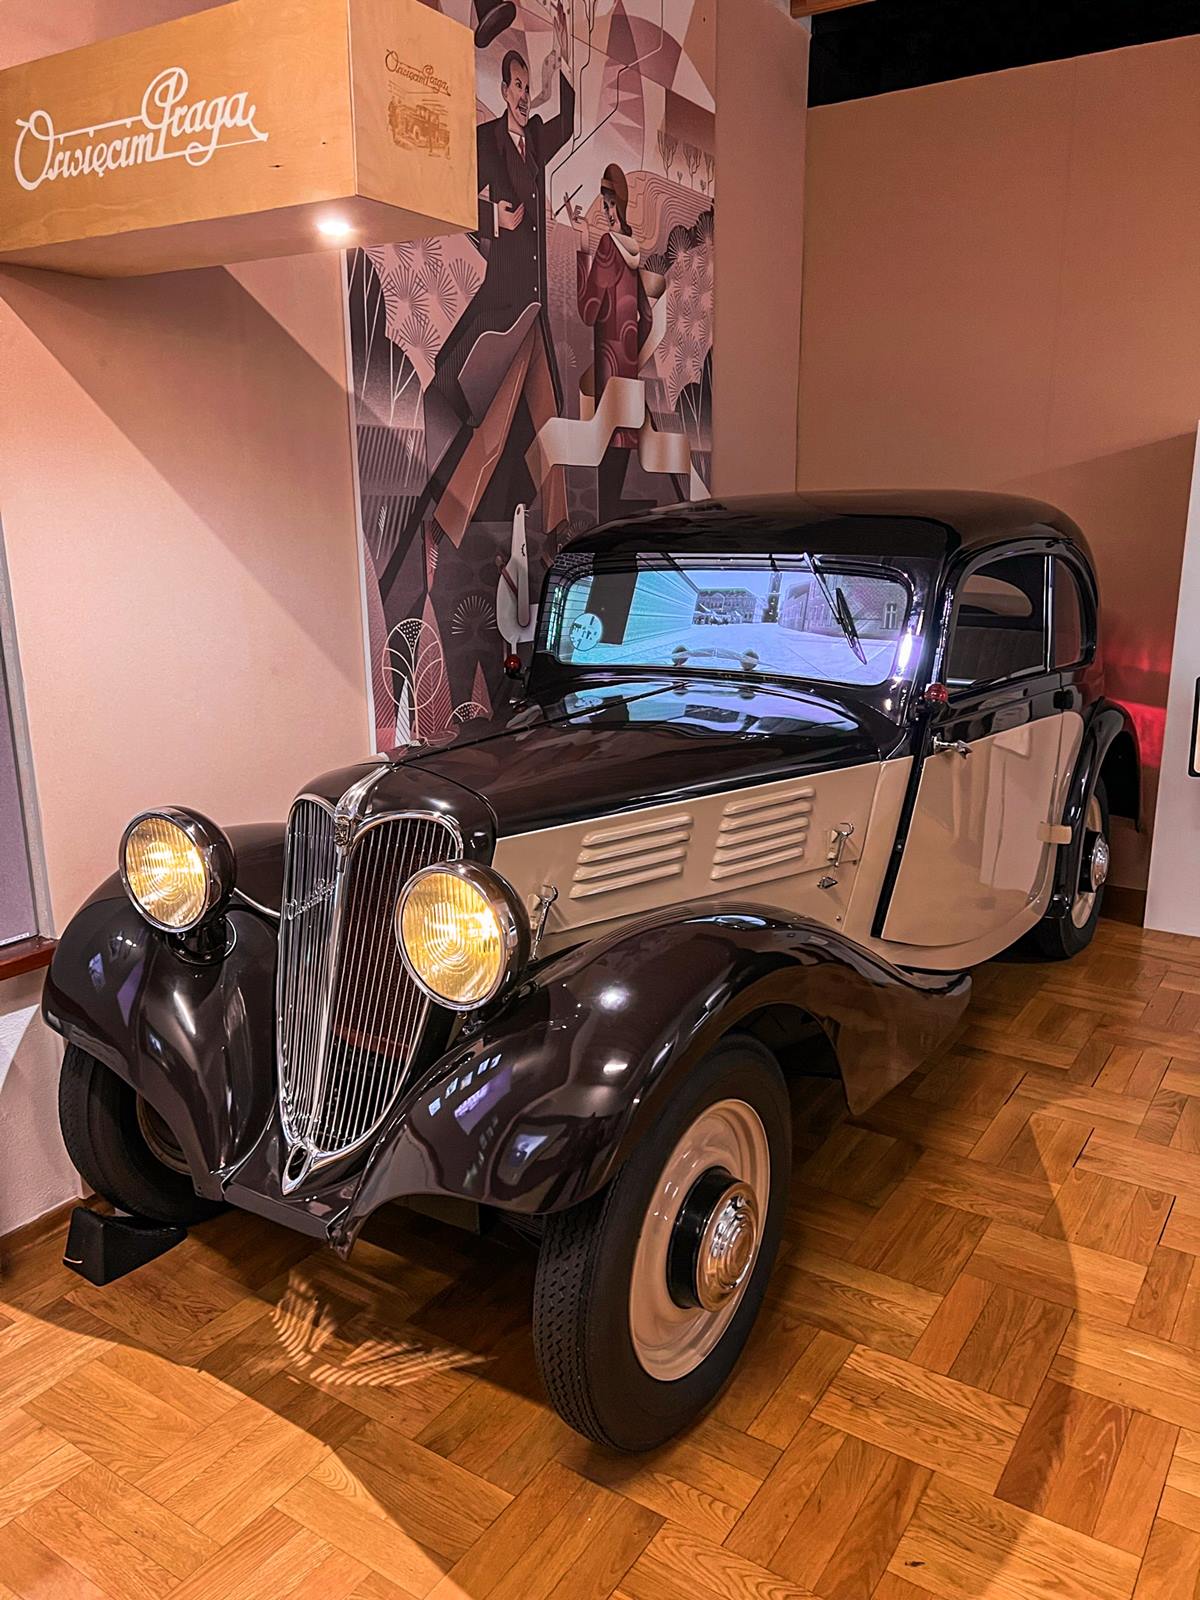 samochod w muzeum w oswiecimiu